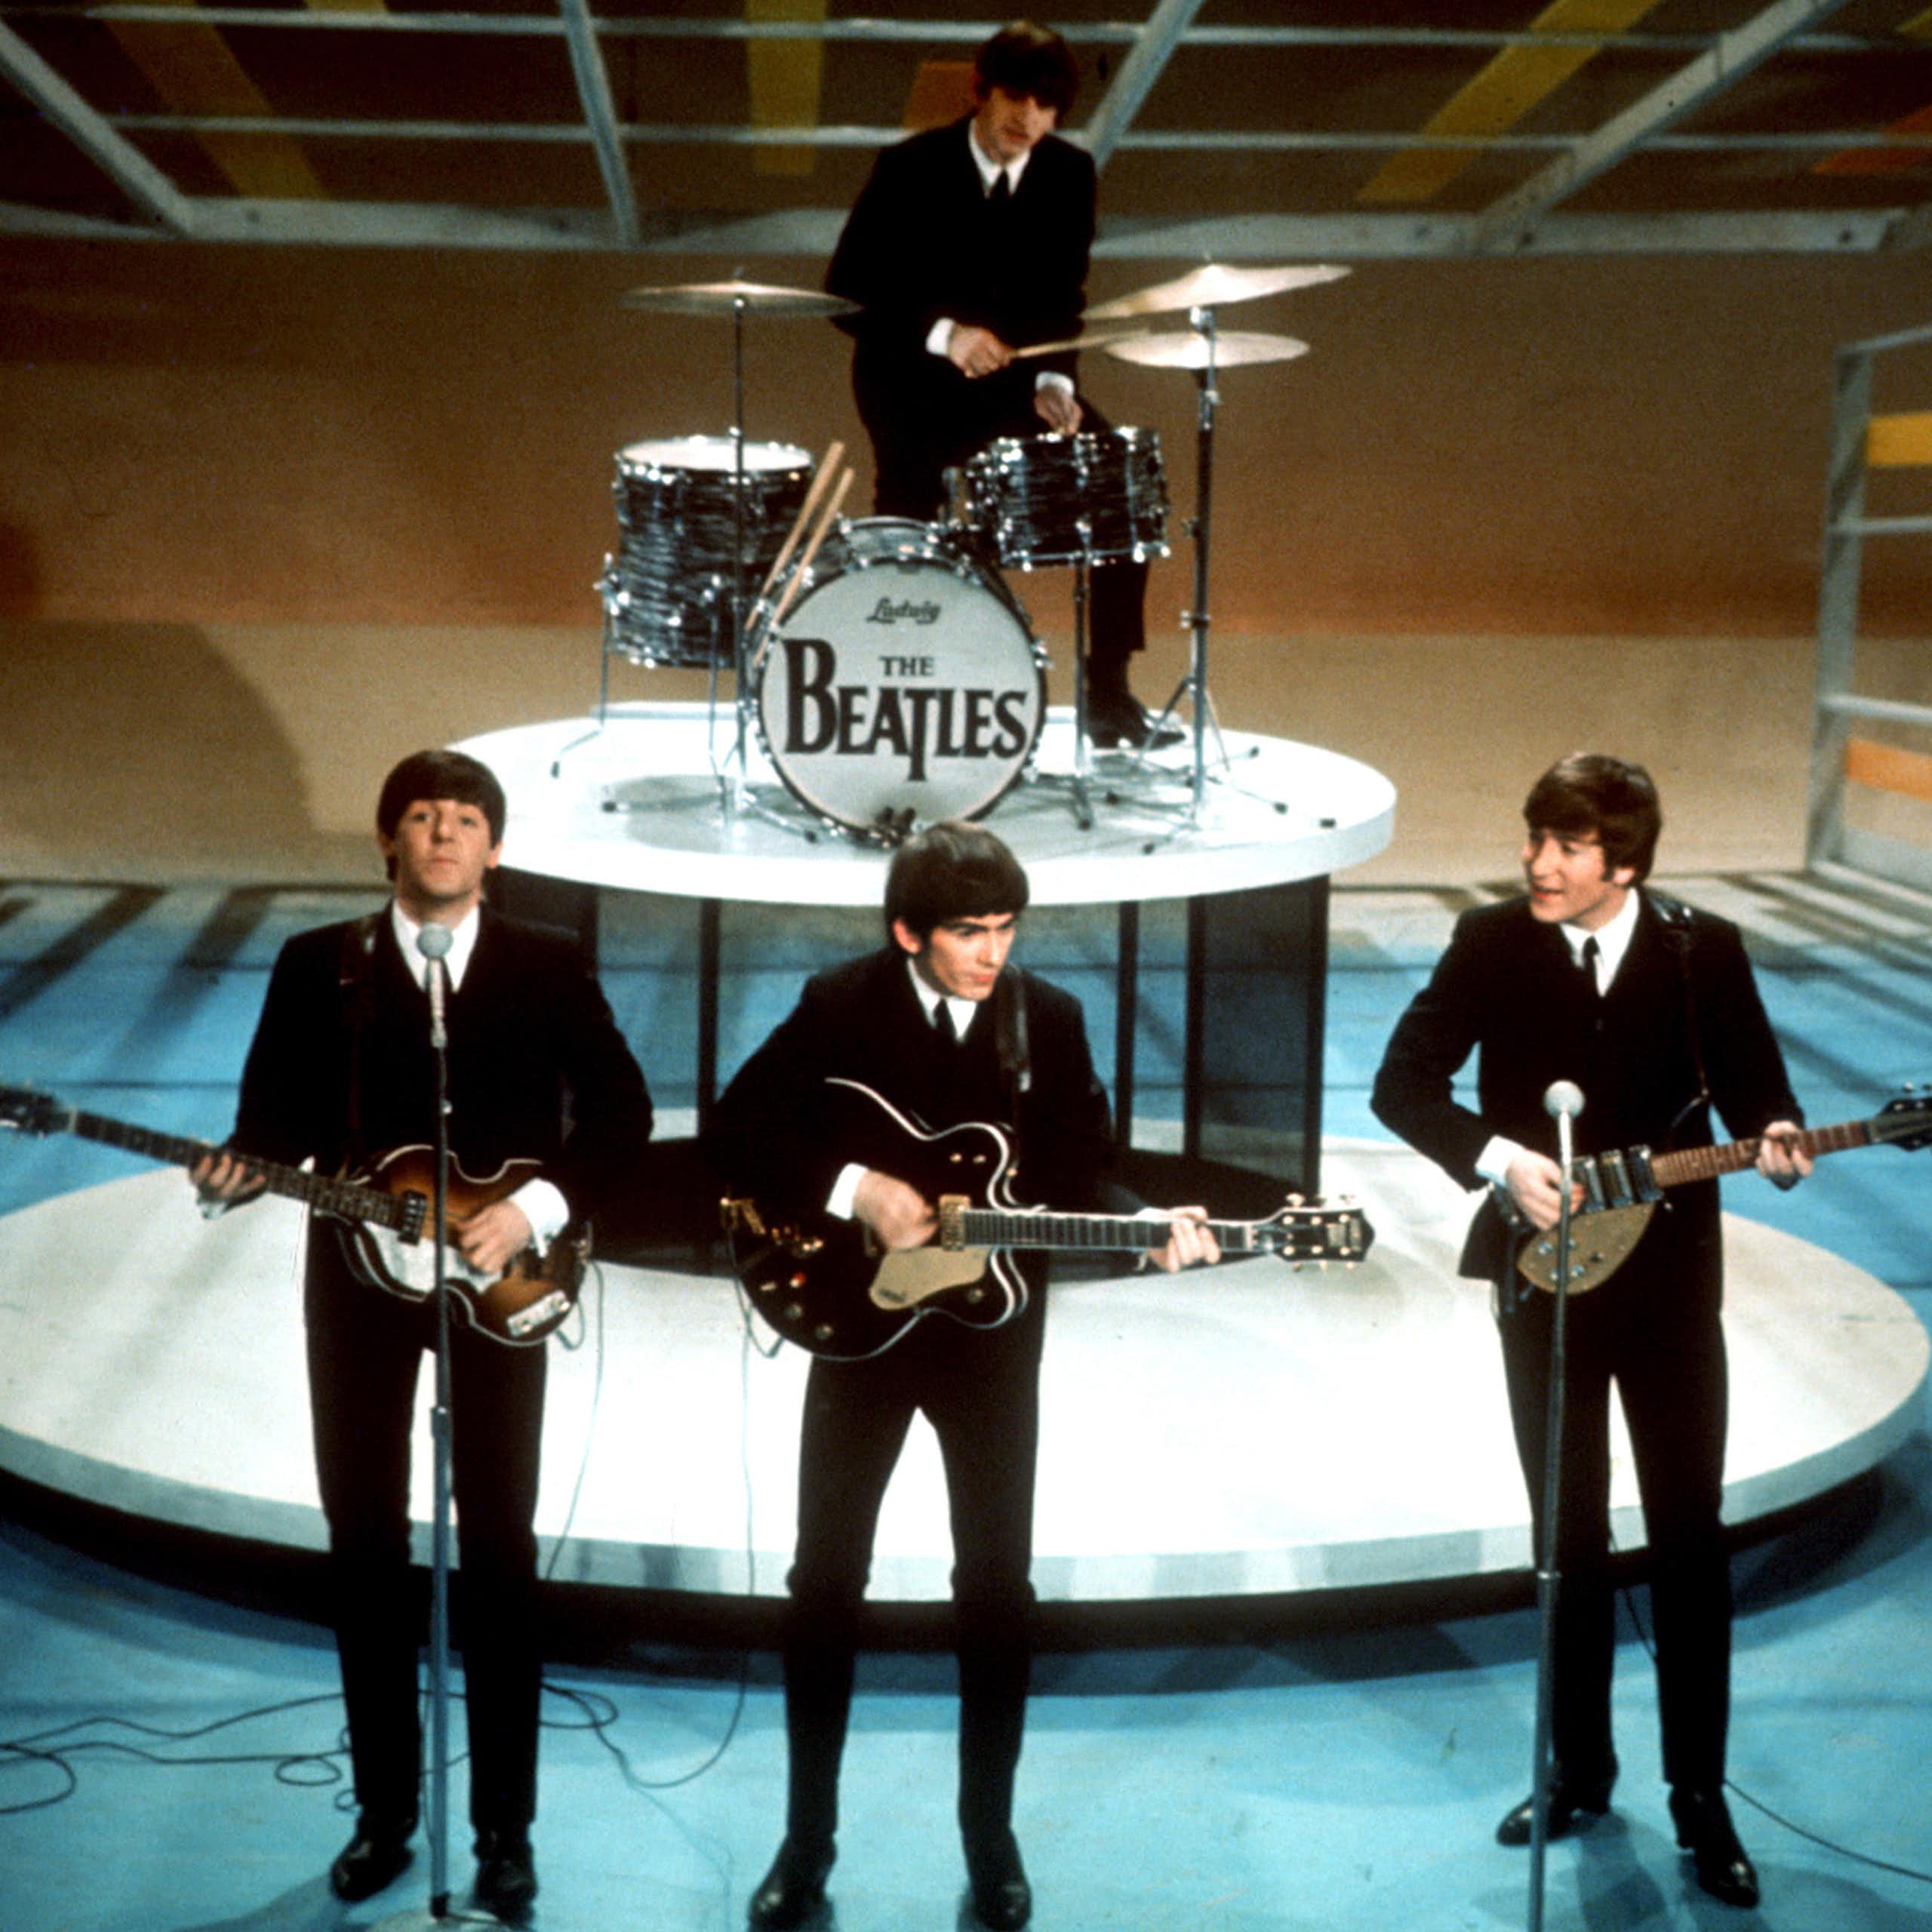 Les Beatles sur scène dans les années 60 en costumes noirs